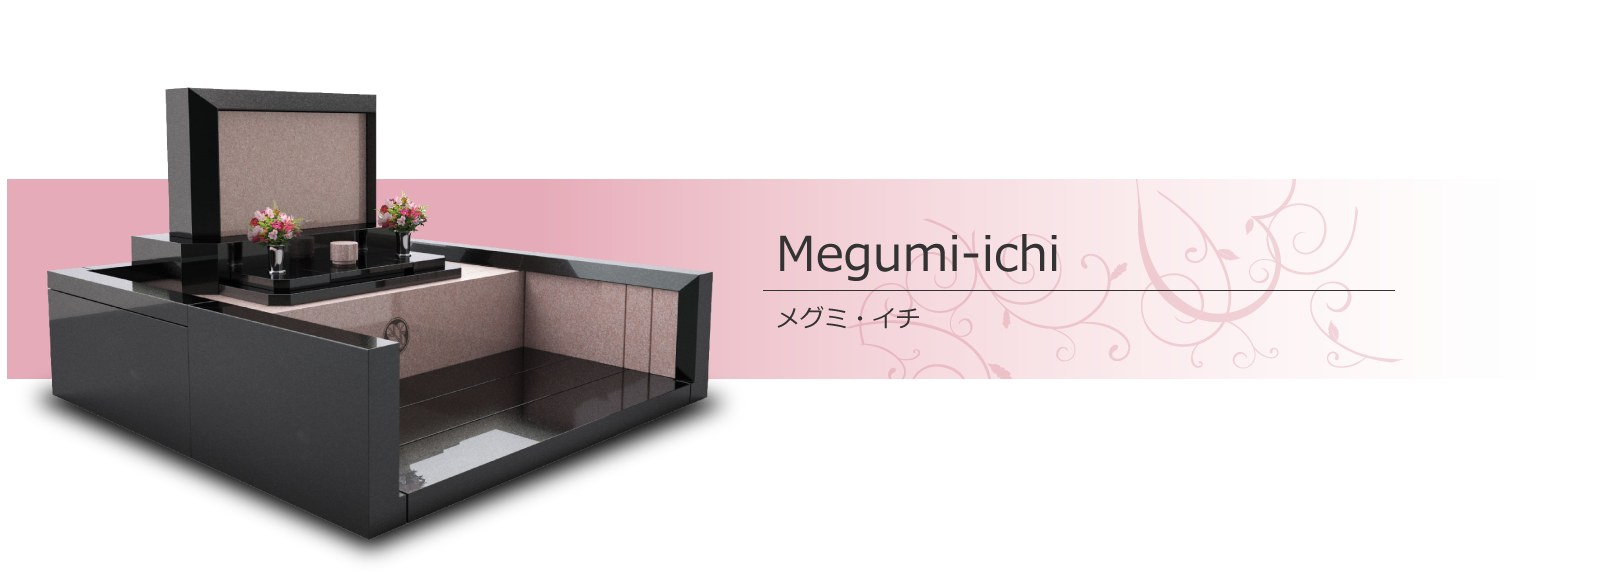 Megumi-ichi